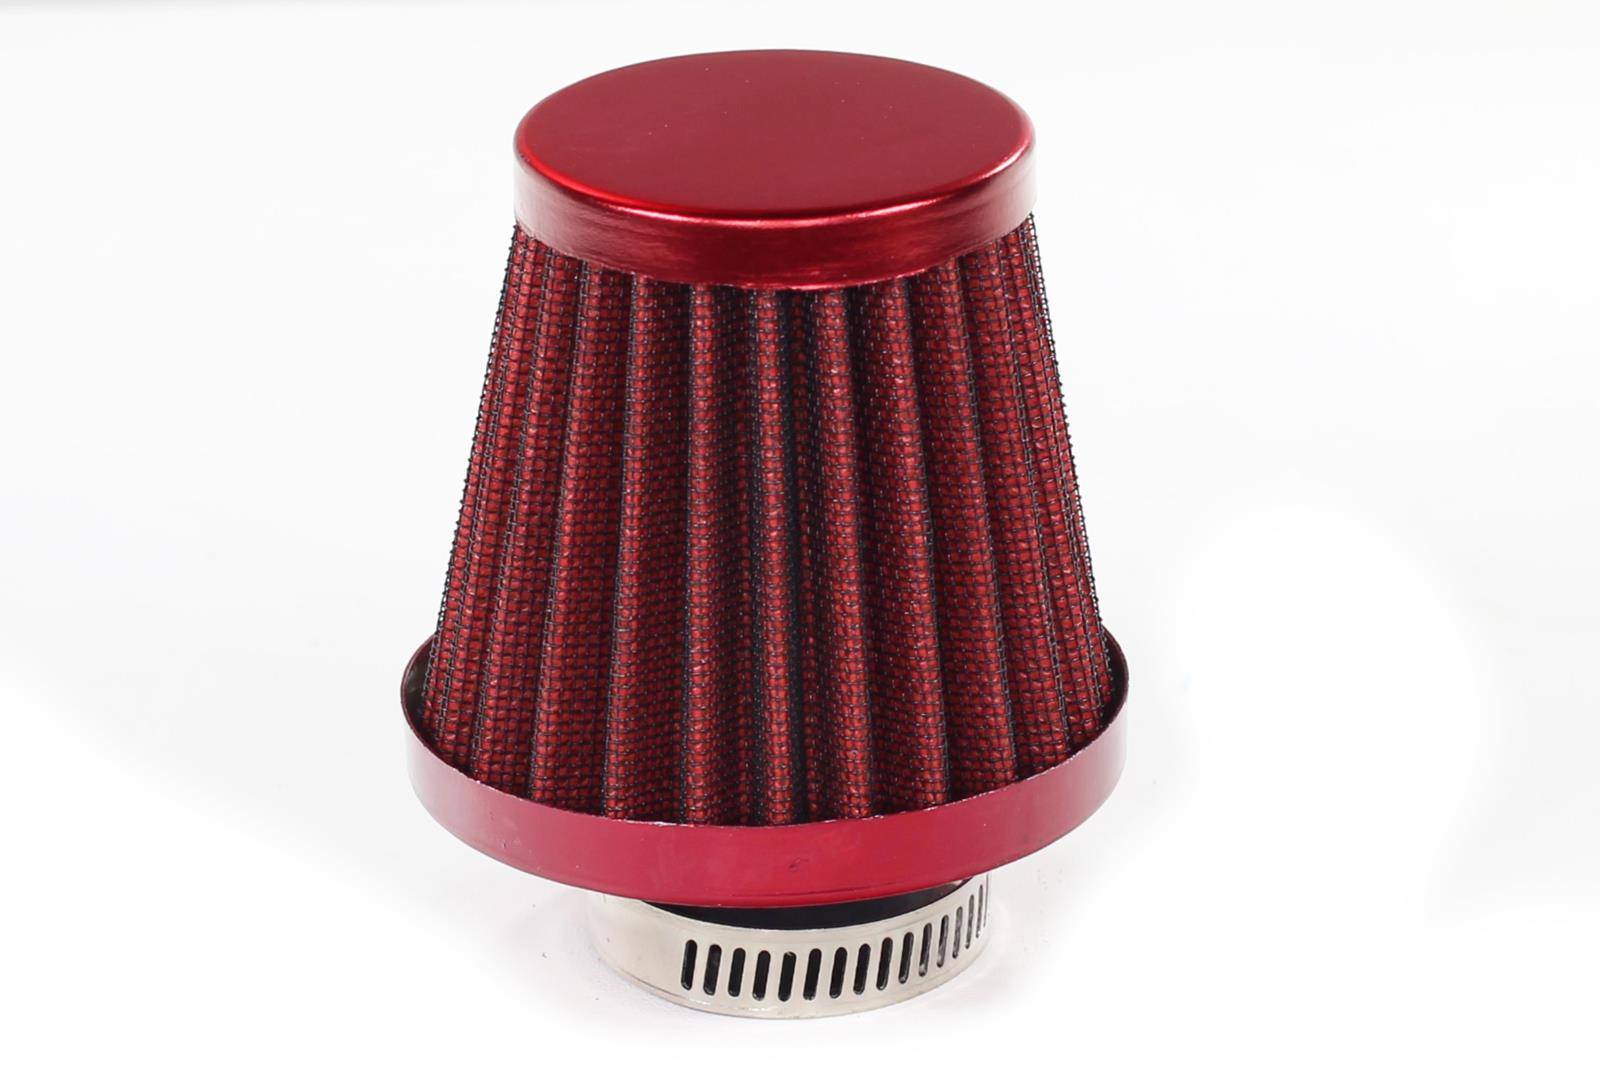 Filtr powietrza stożkowy czerwony 28mm